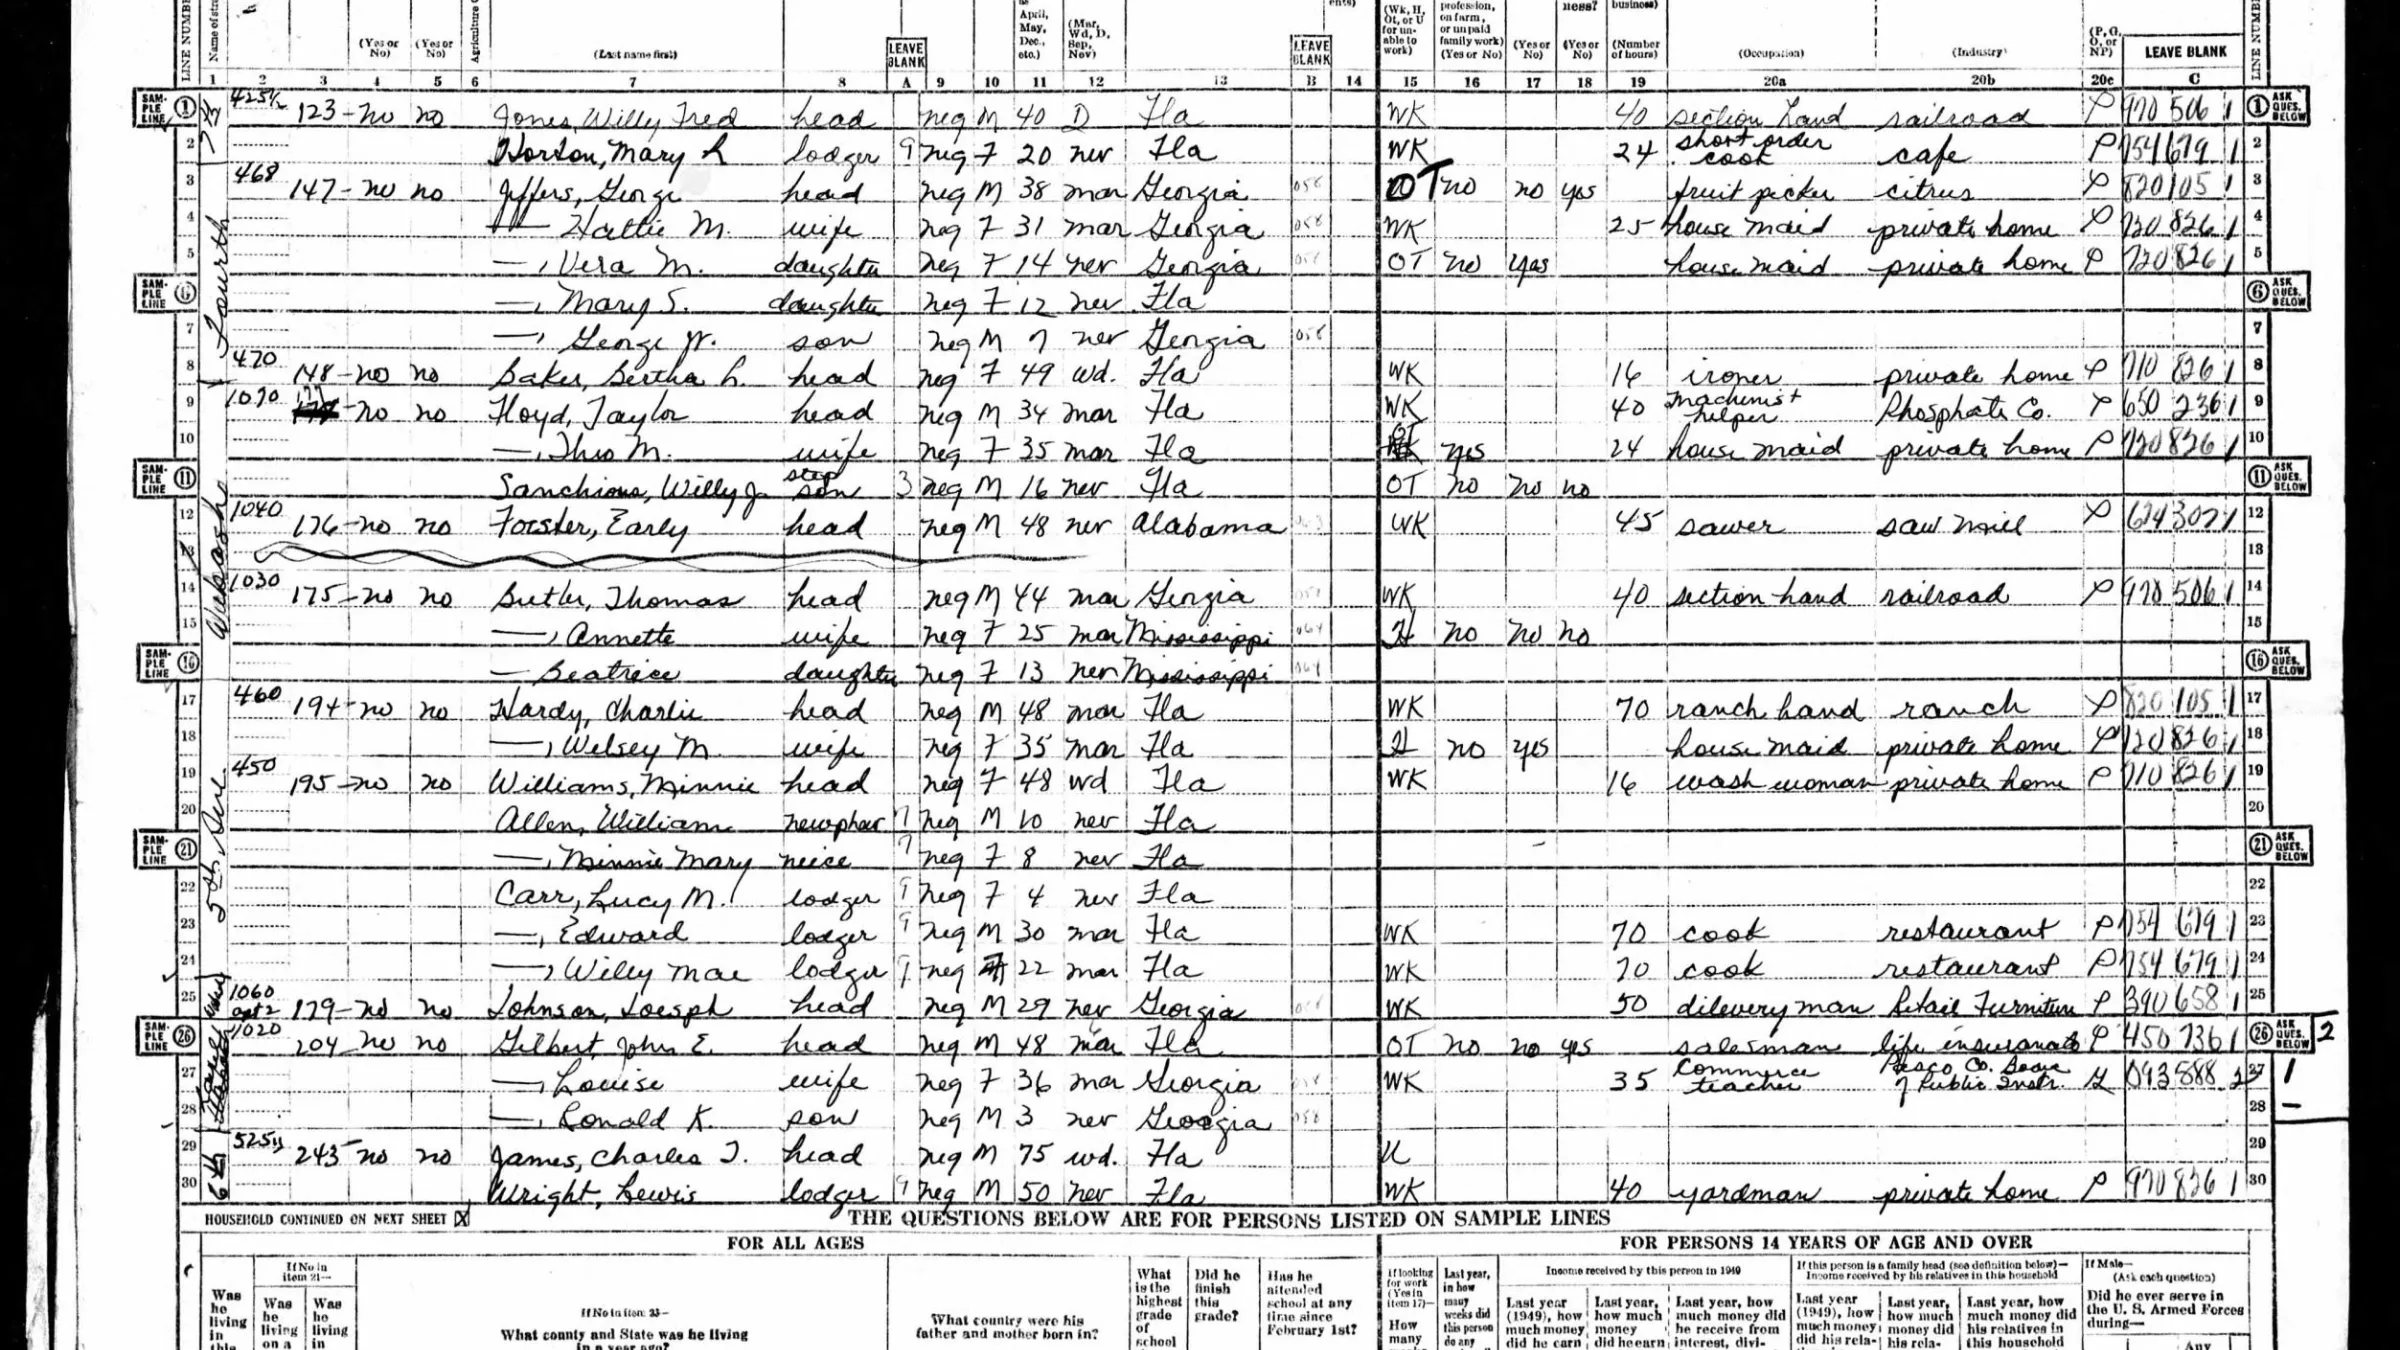 1950 US Census